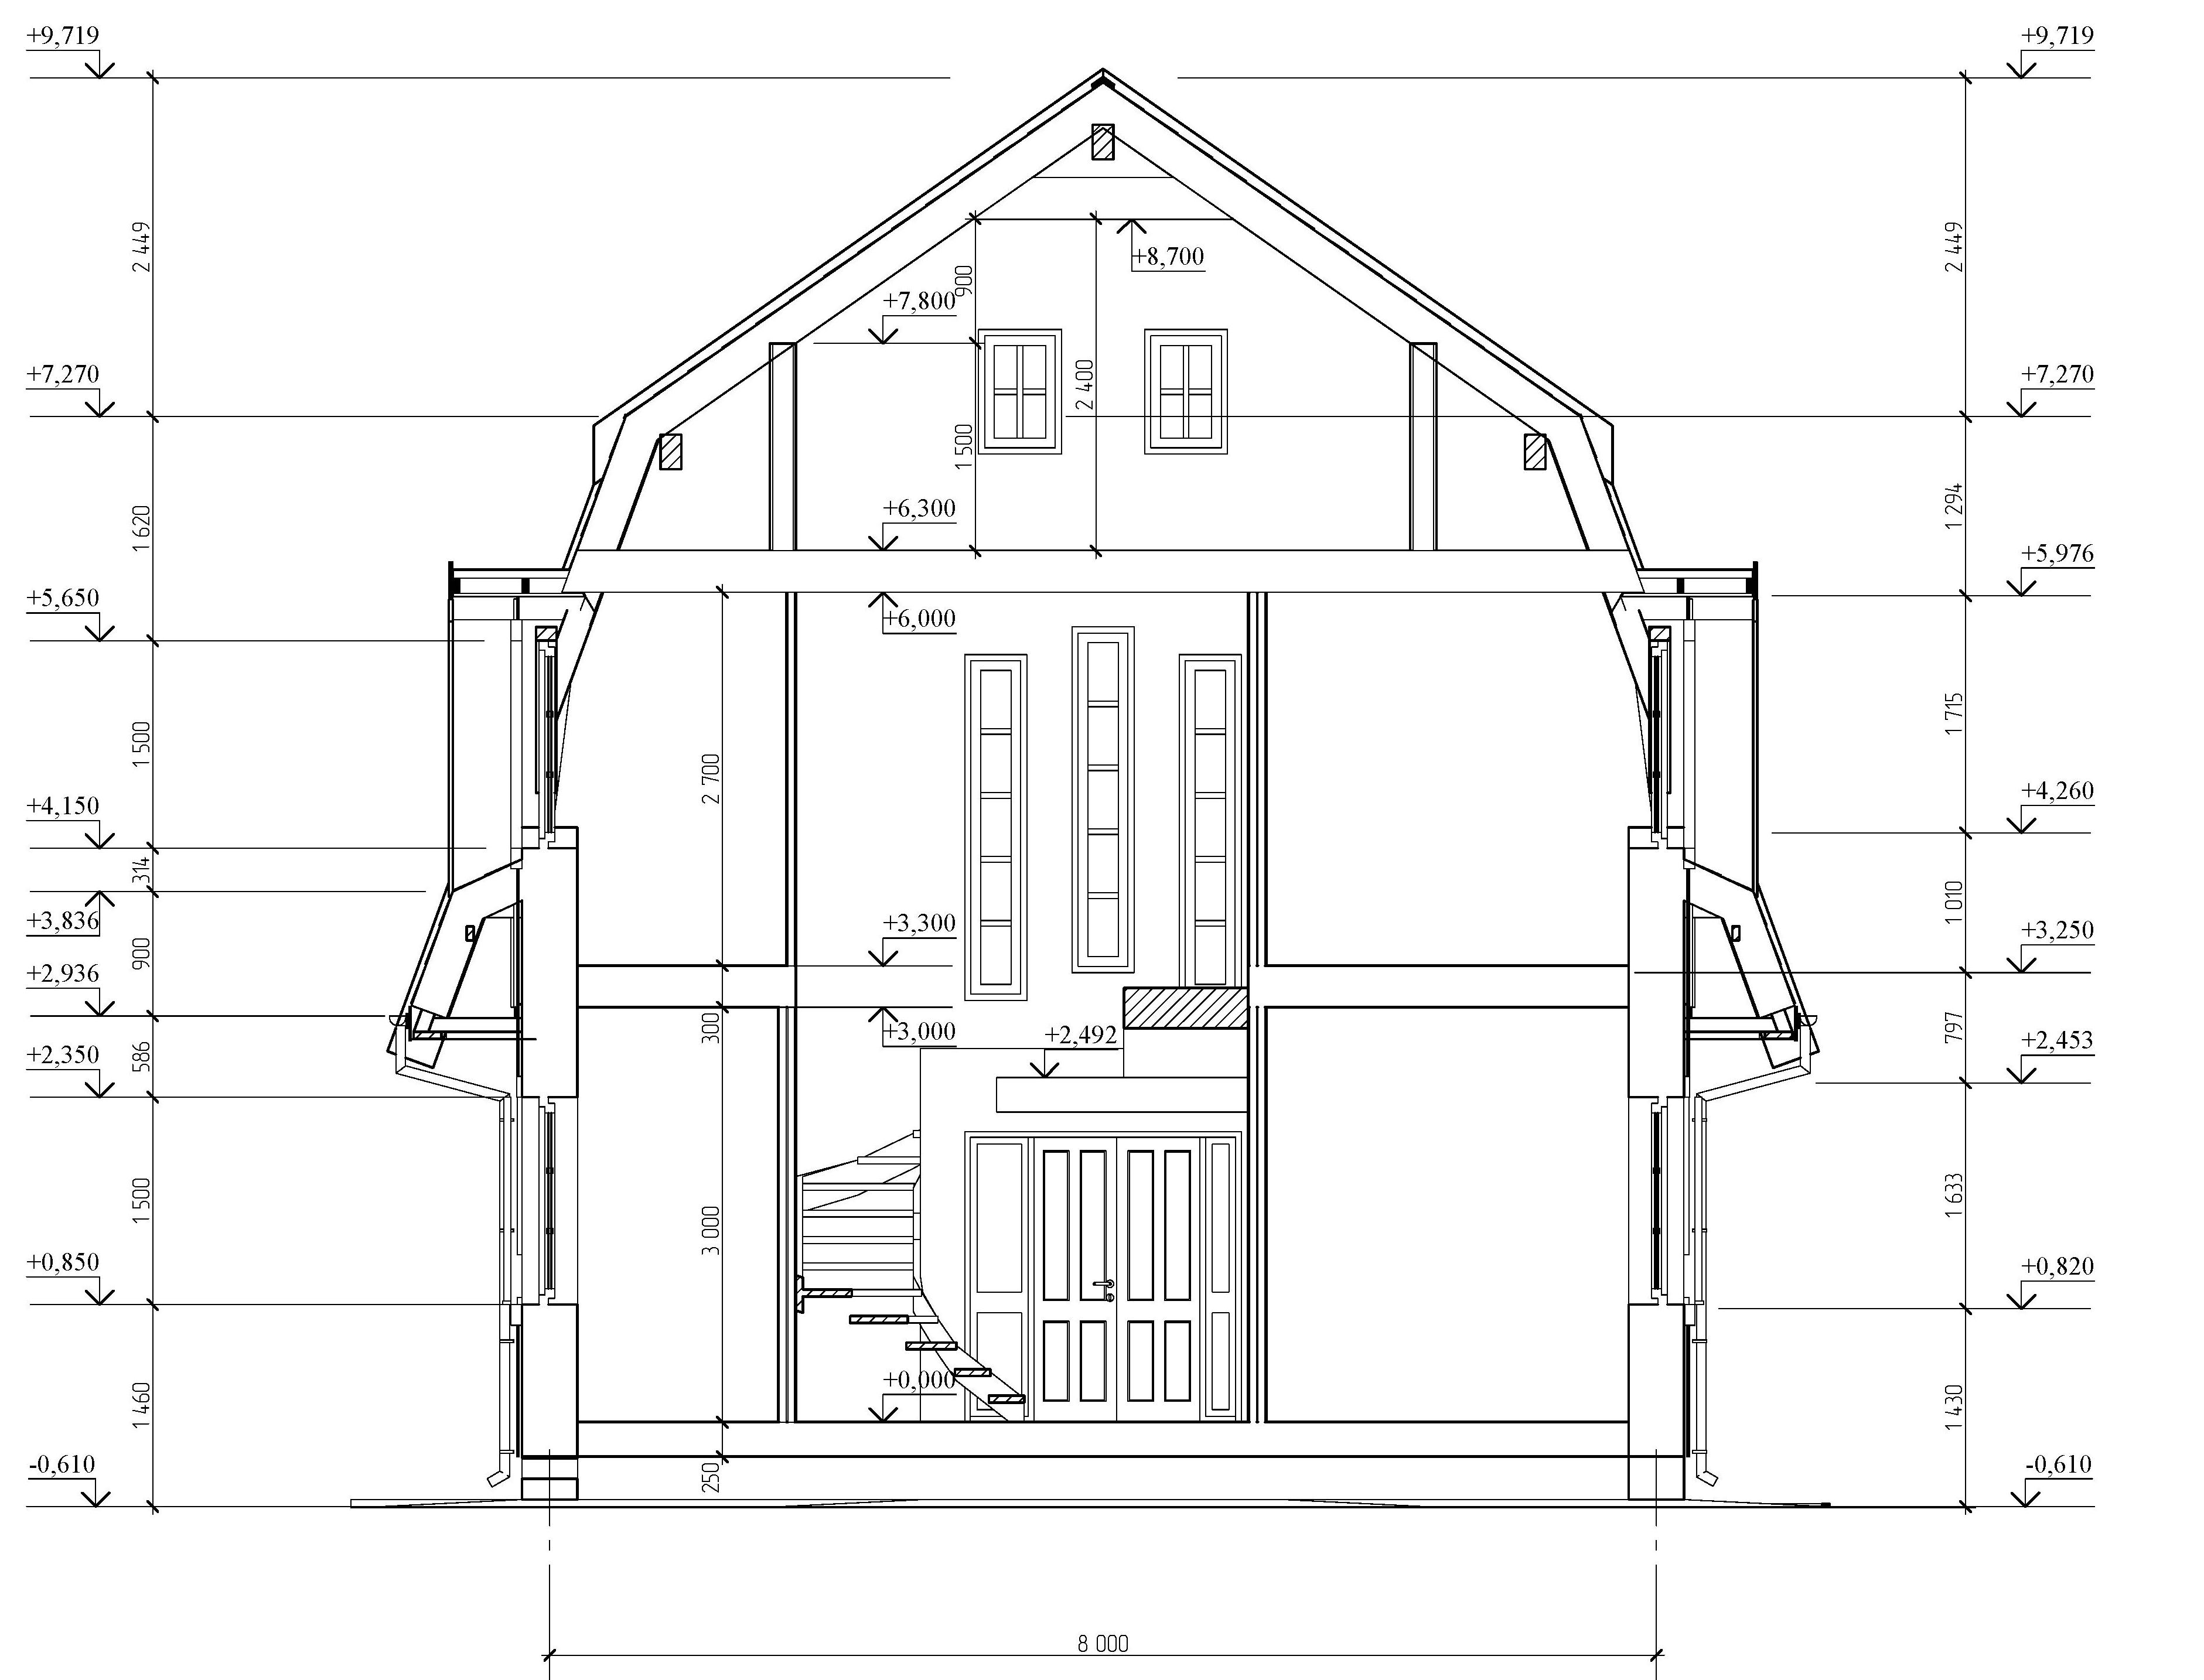 Проекты домов и чертежи: готовые и типовые. Каталог содержит планировки, планы и чертежи